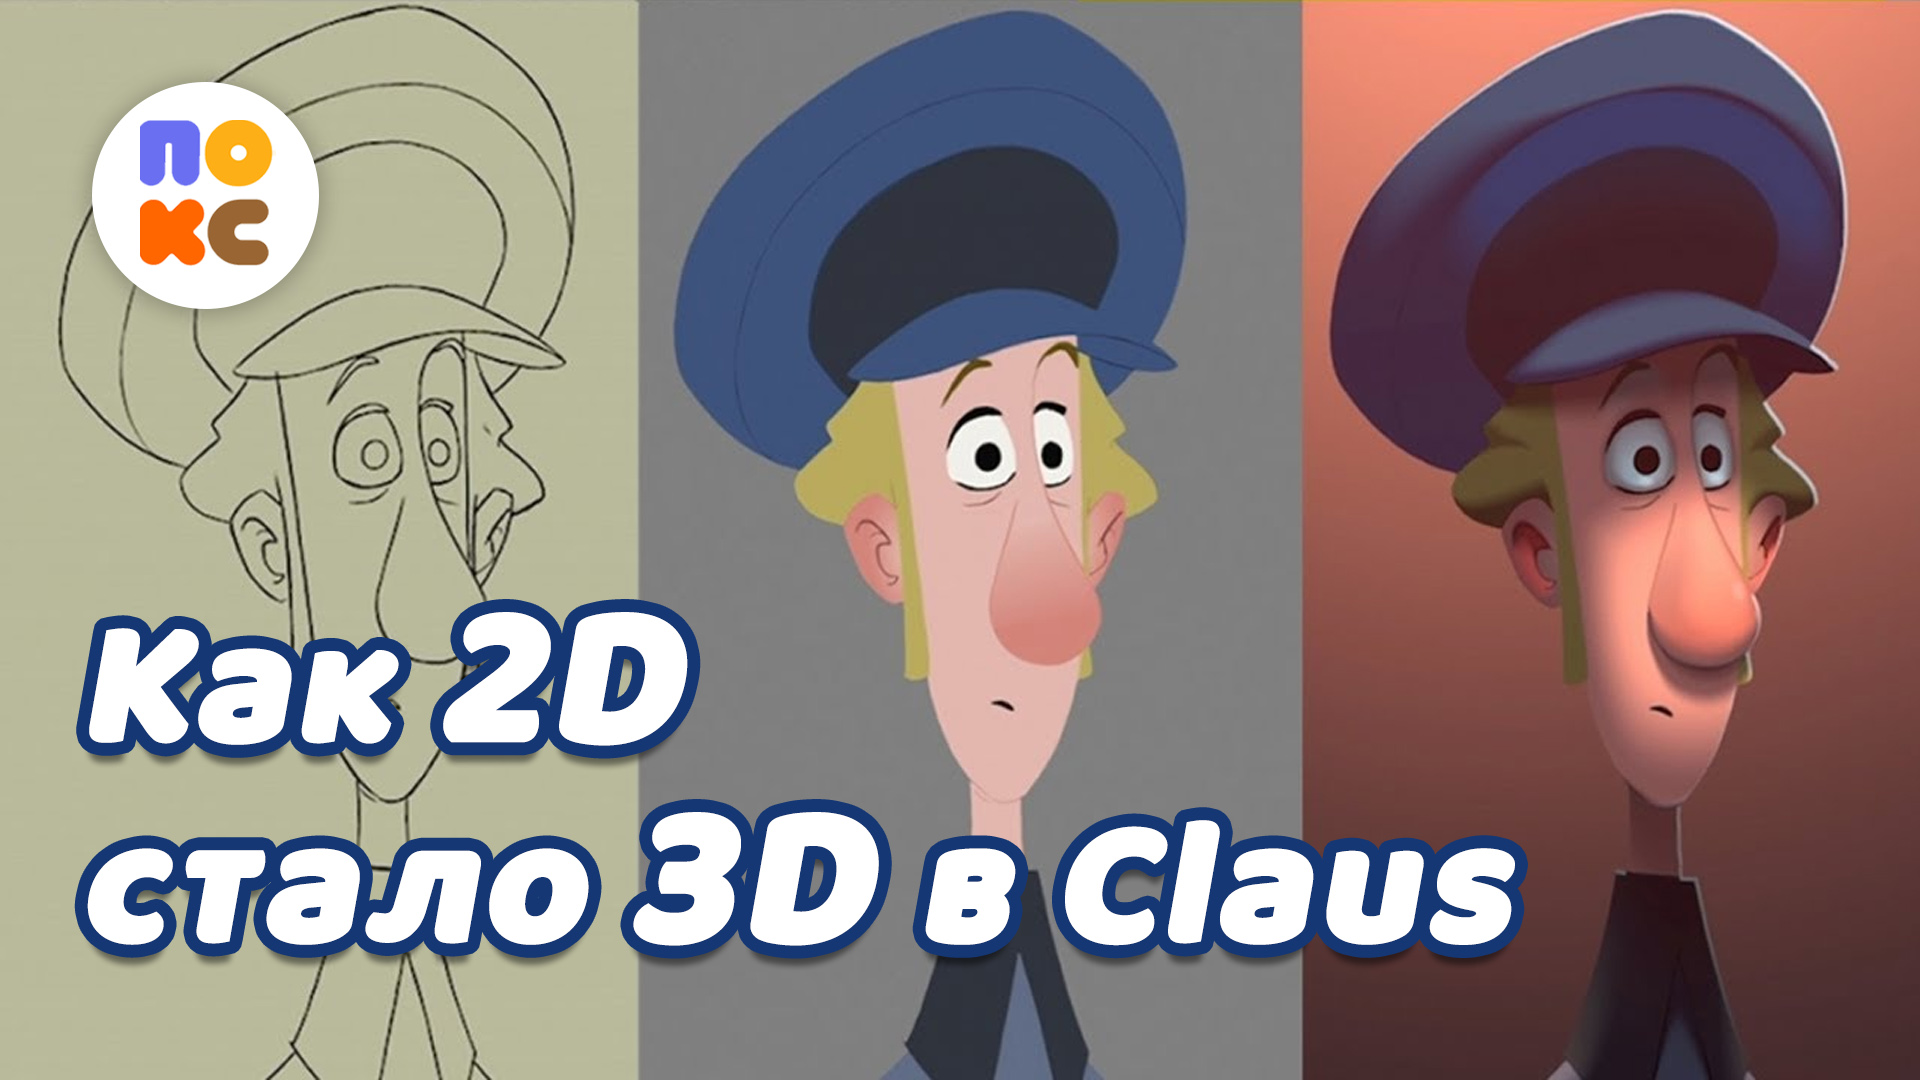 Как в мультфильме Клаус заставили 2D анимацию выглядеть как 3D (перевод с англ.)